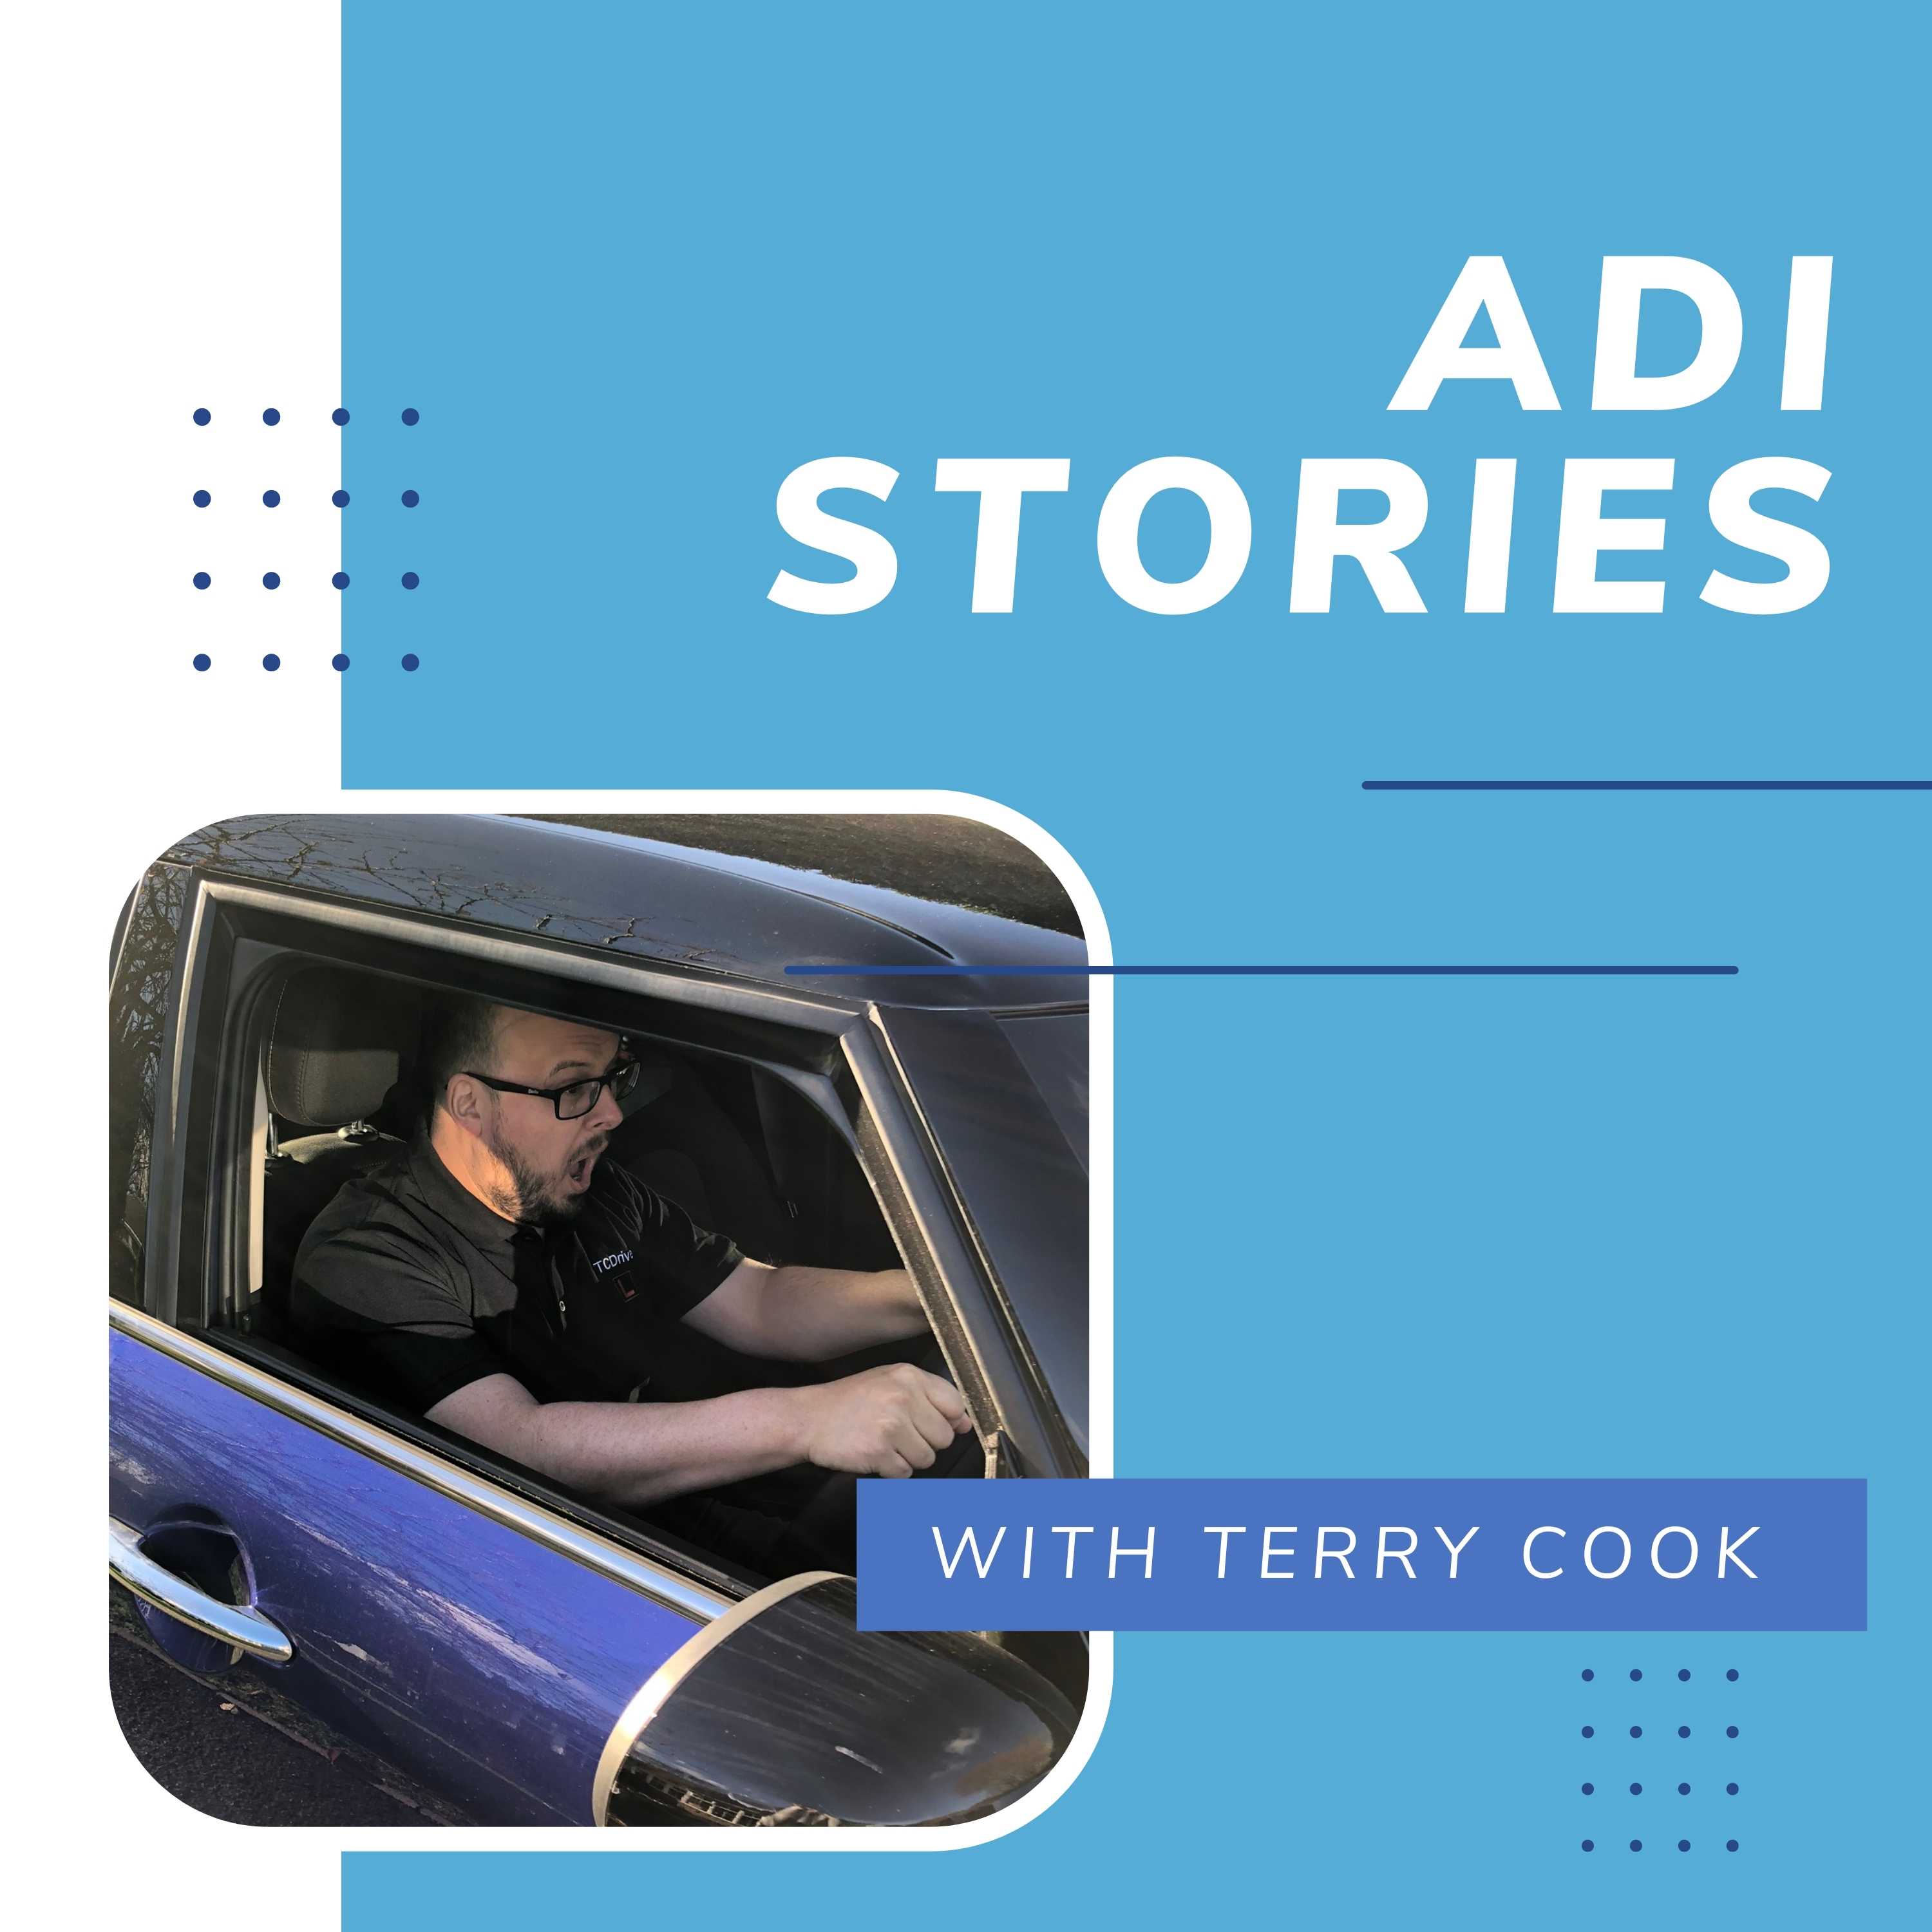 Artwork for podcast ADI Stories